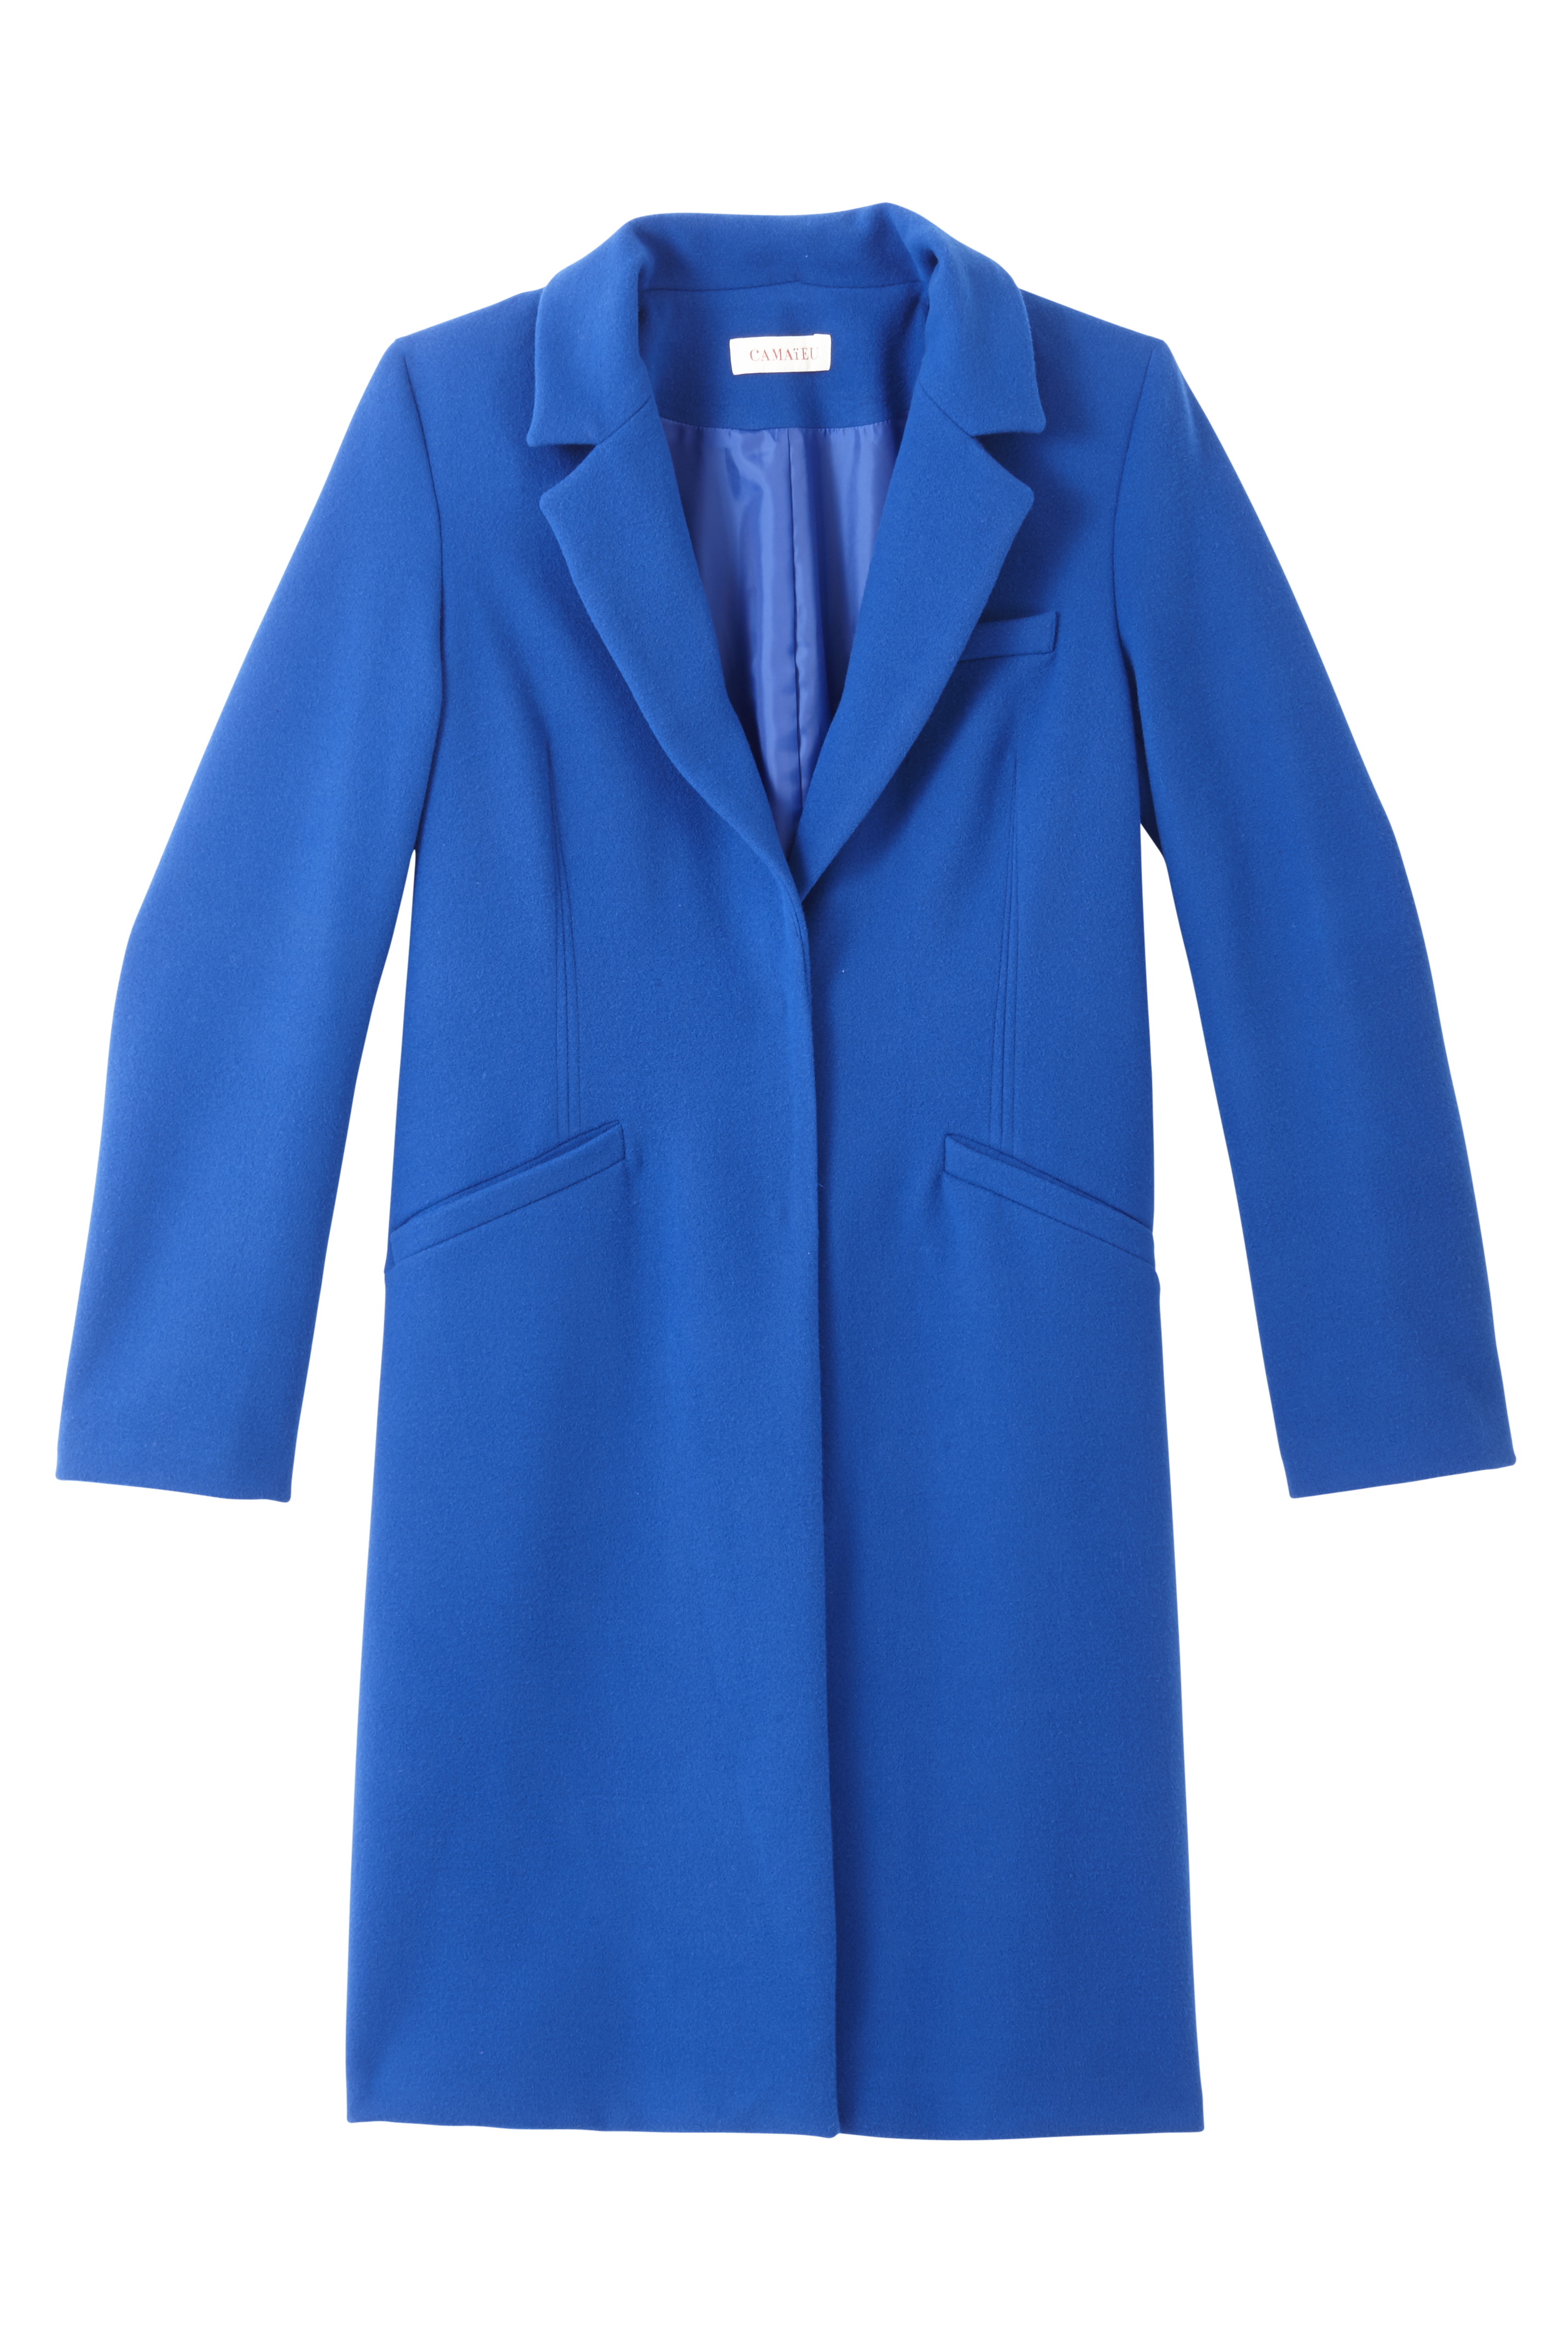 manteau bleu camaieu